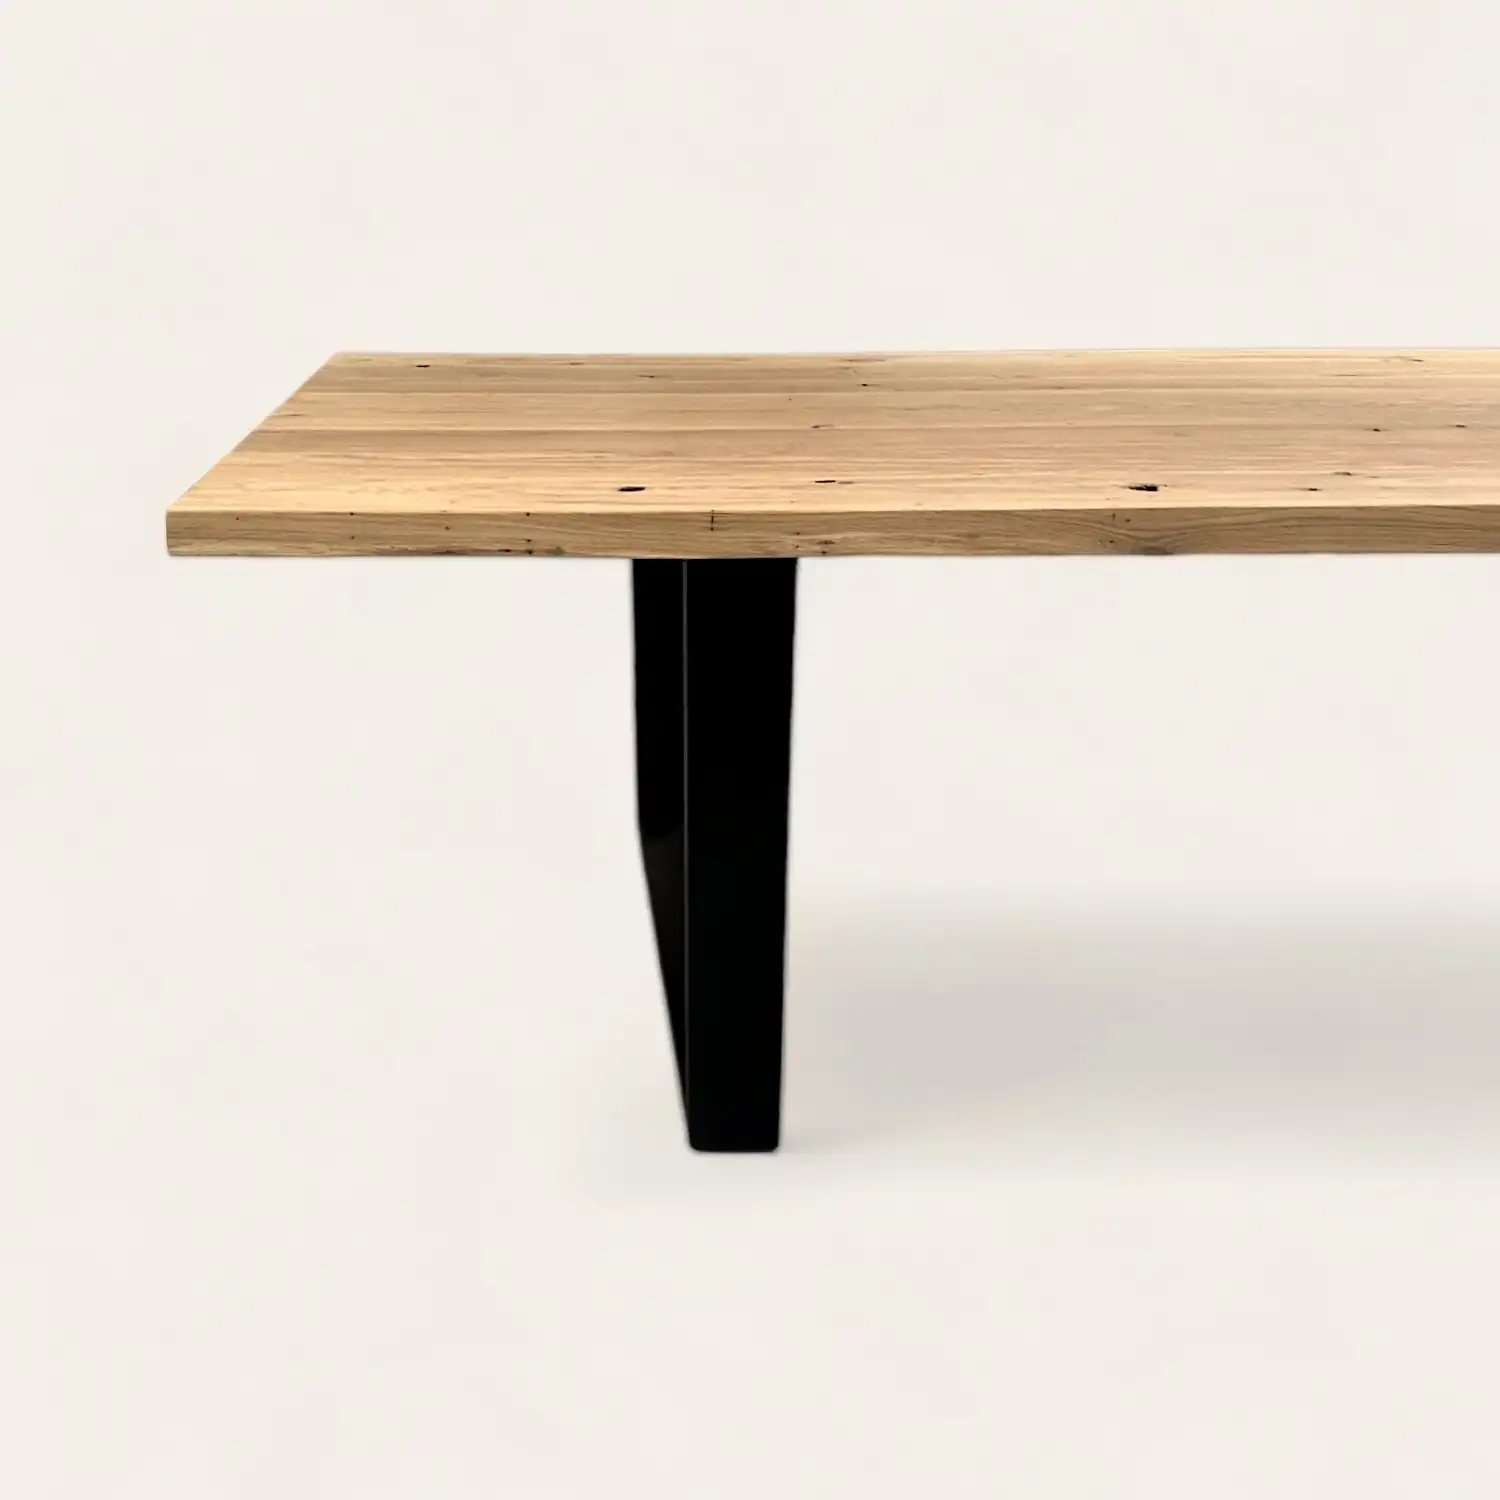  Table en bois clair ancien avec pied central en forme de T noir, conjuguant charme rustique et touche contemporaine. 